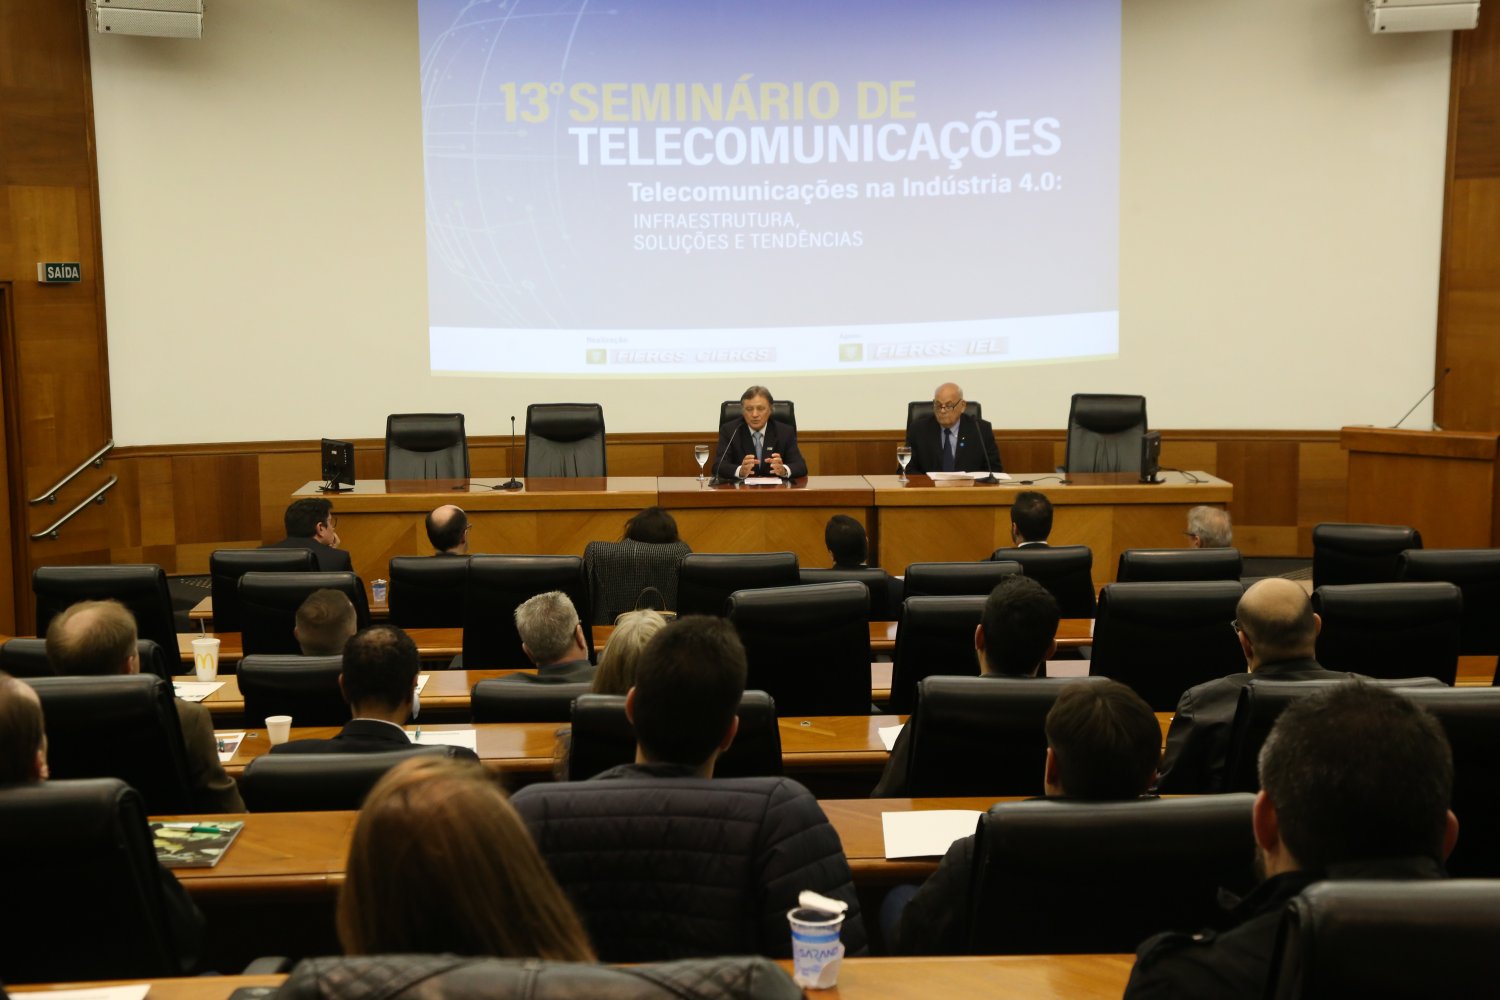 13º Seminário de Telecomunicações